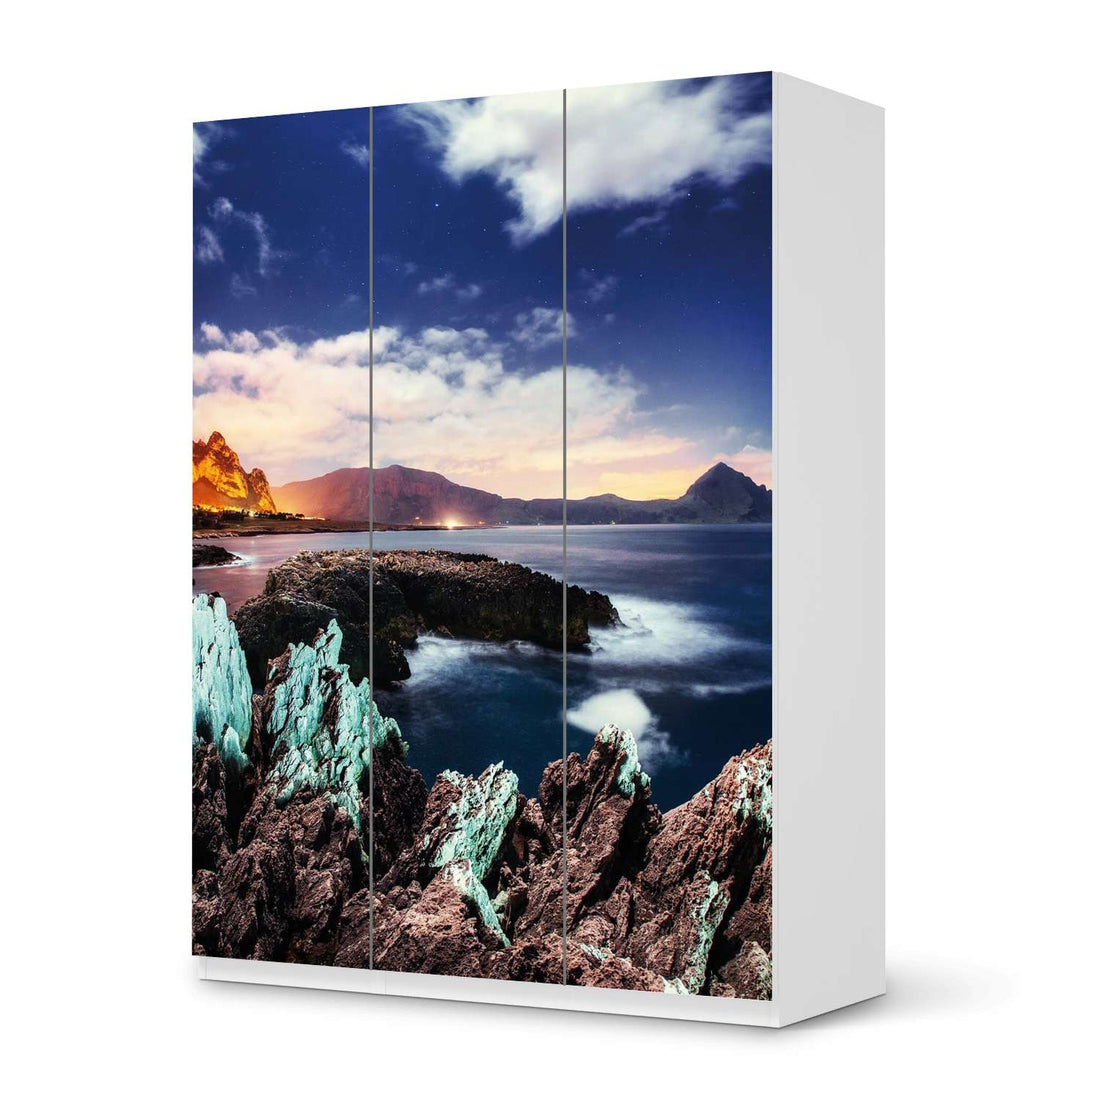 Folie für Möbel Seaside - IKEA Pax Schrank 201 cm Höhe - 3 Türen - weiss